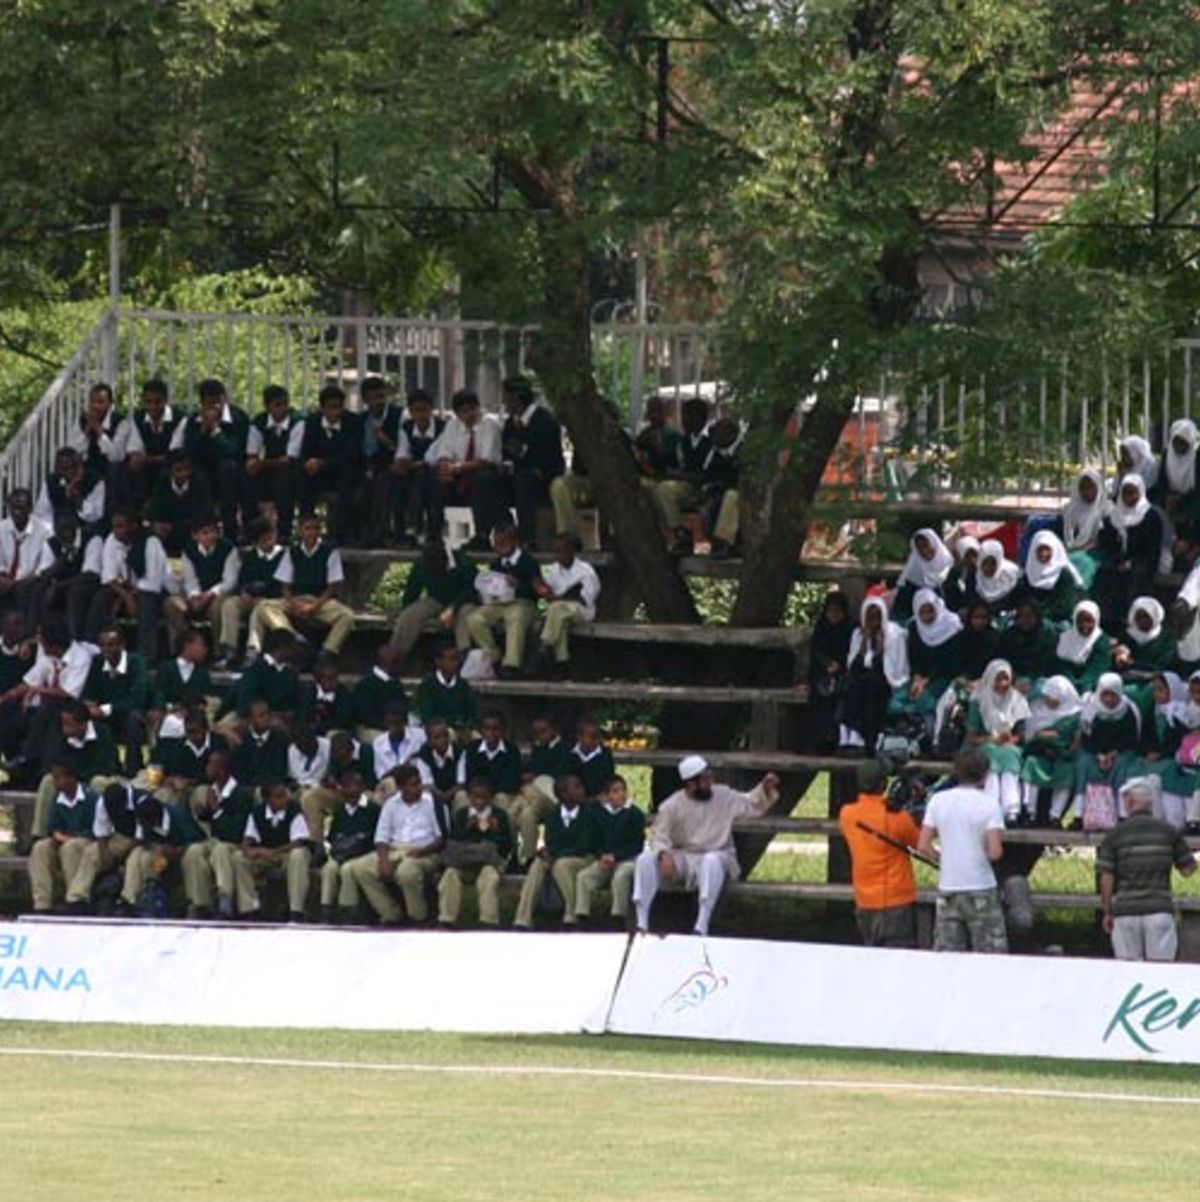 School kids cheer on Kenya at the Nairobi Gymkhana, Kenya v Netherlands, 6th Match, Nairobi Gymkhana, January 31, 2007